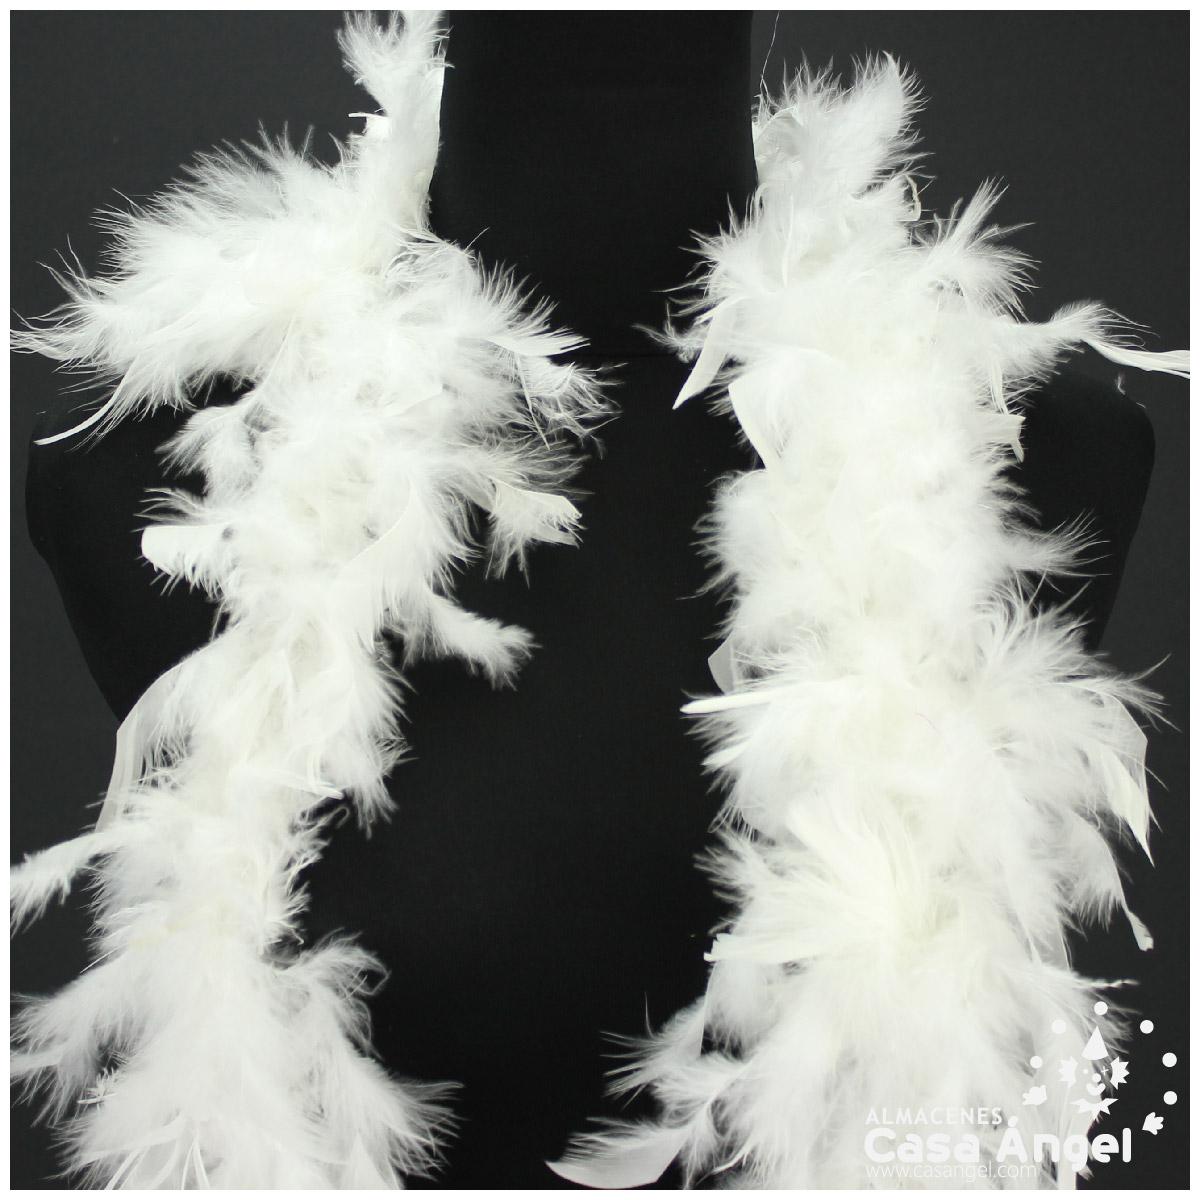 HAYES SPECIALTIES Boa de plumas blancas con oropel plateado, Plateado/Blanco